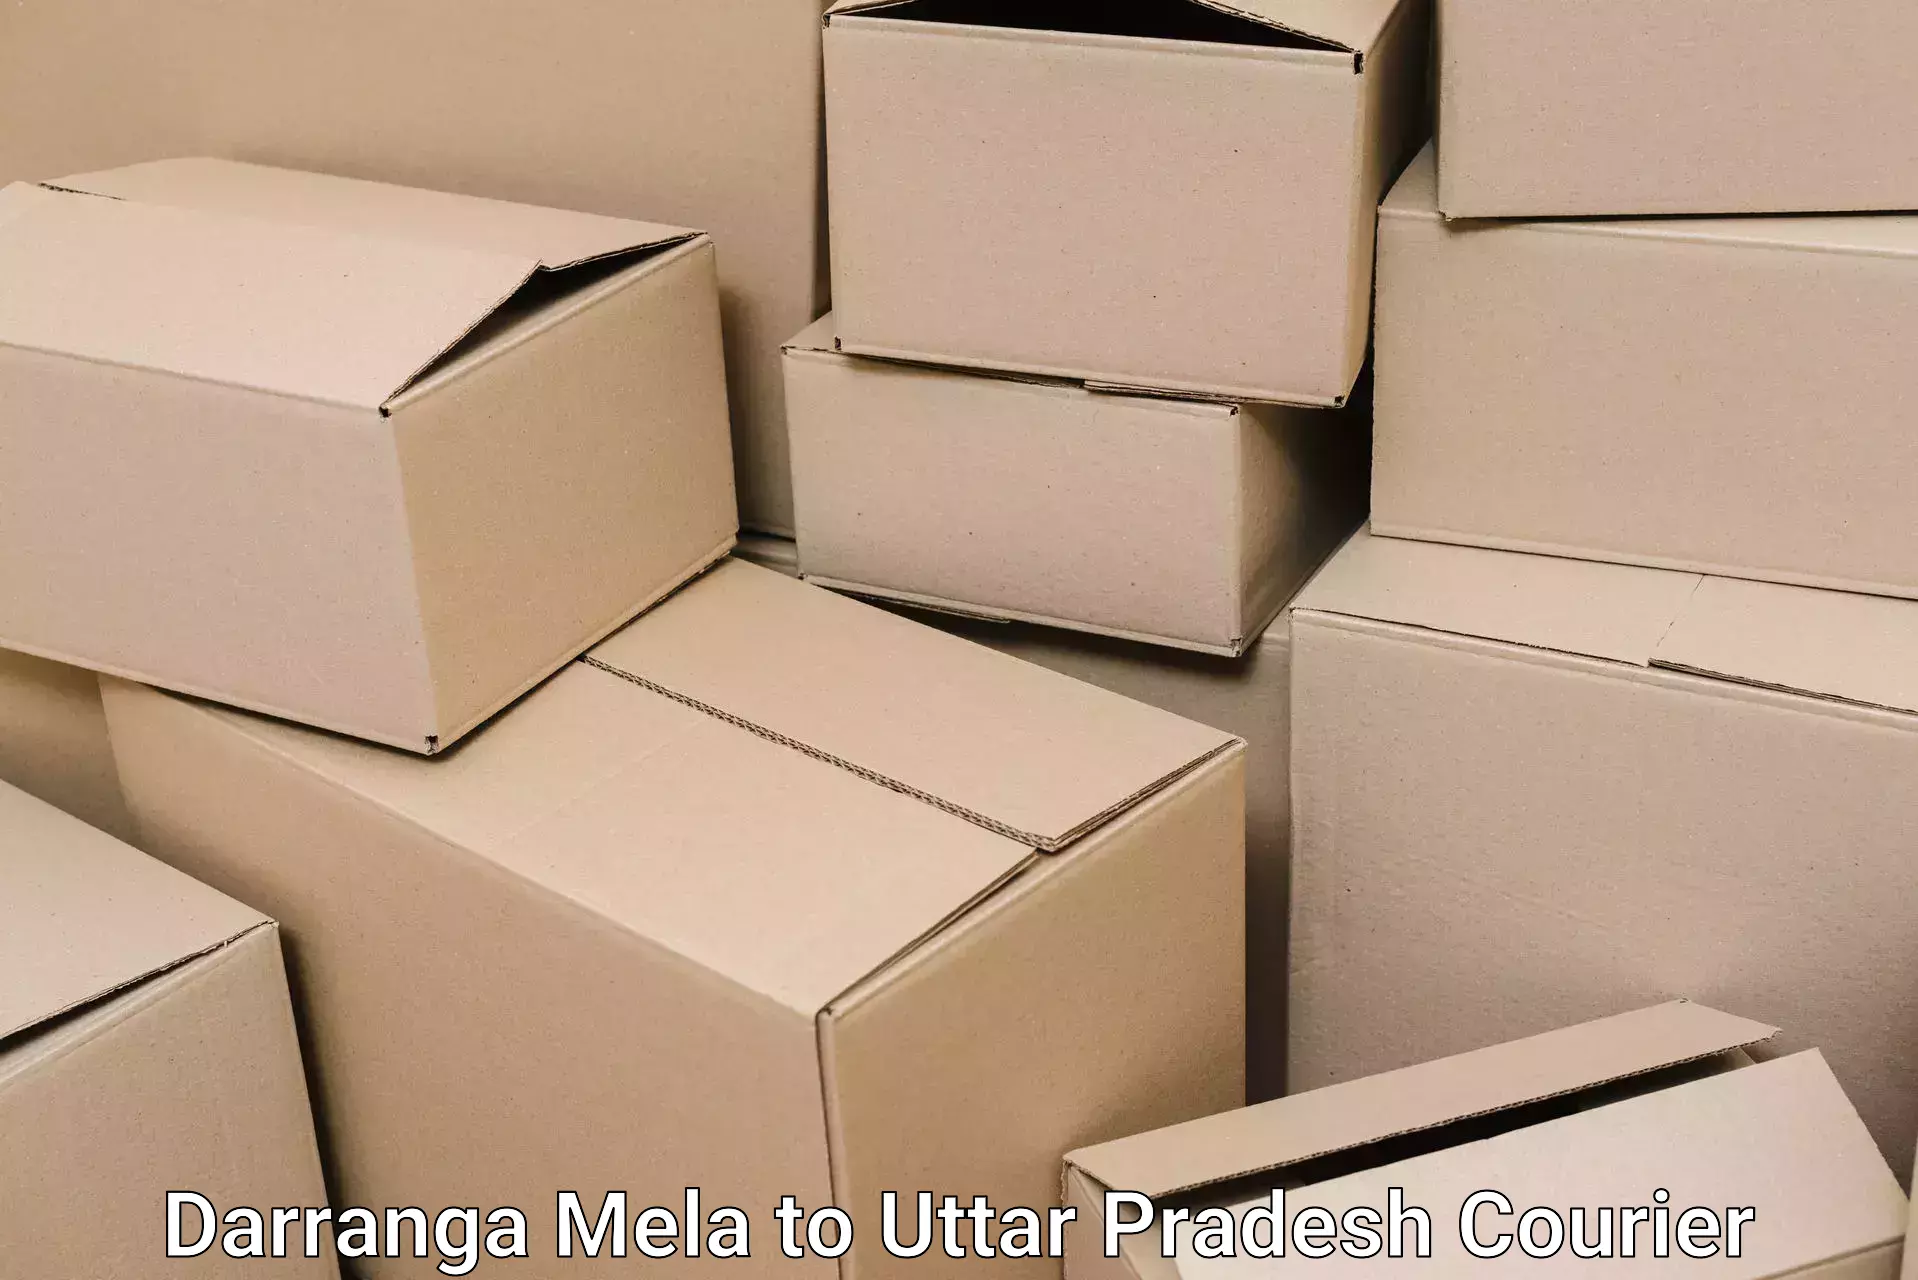 Reliable furniture movers Darranga Mela to Balrampur